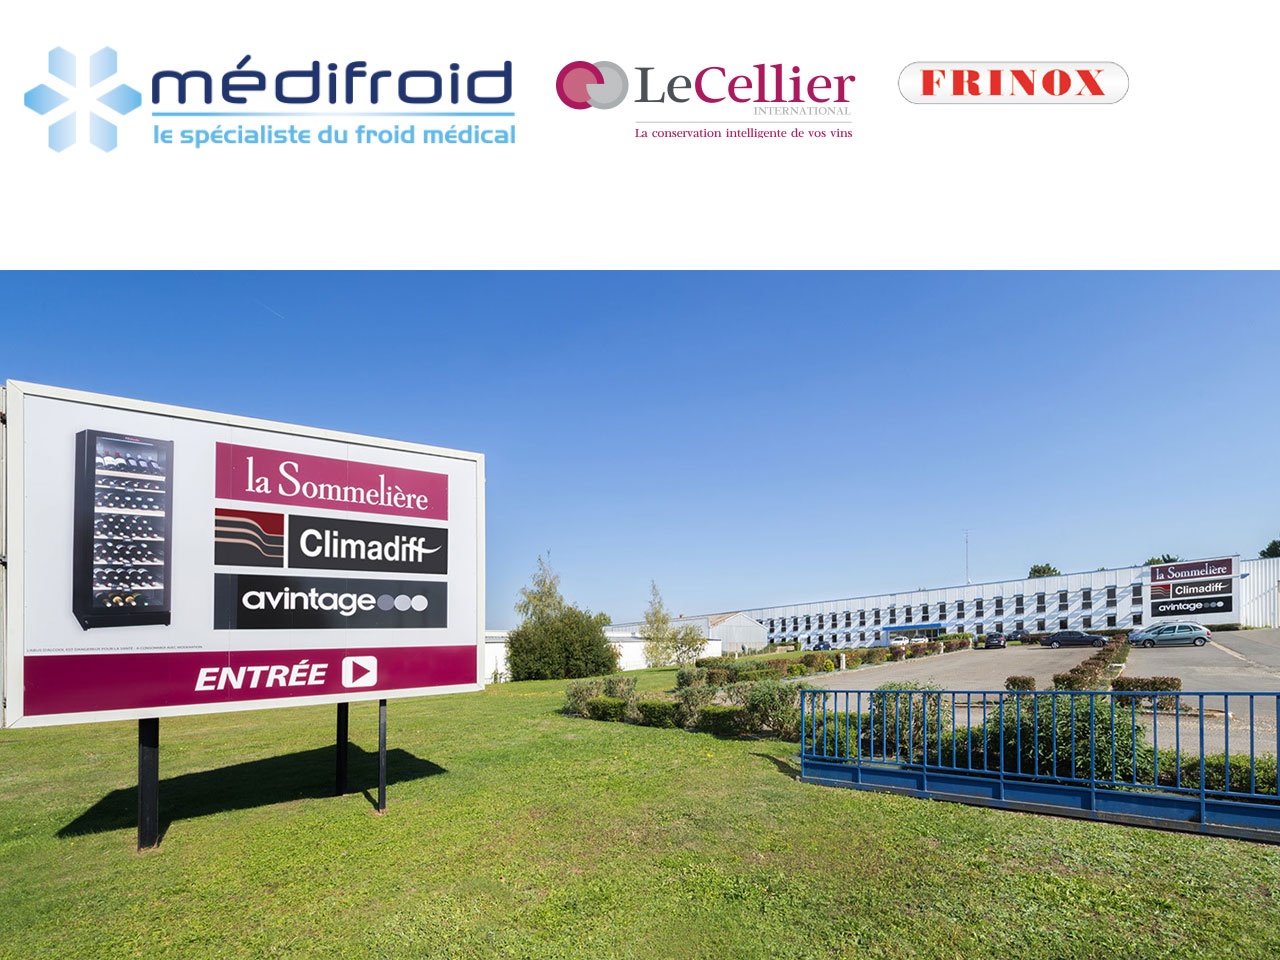 Le groupe FRIO poursuit son développement avec 3 acquisitions : Médifroid, Le Cellier International et Frinox